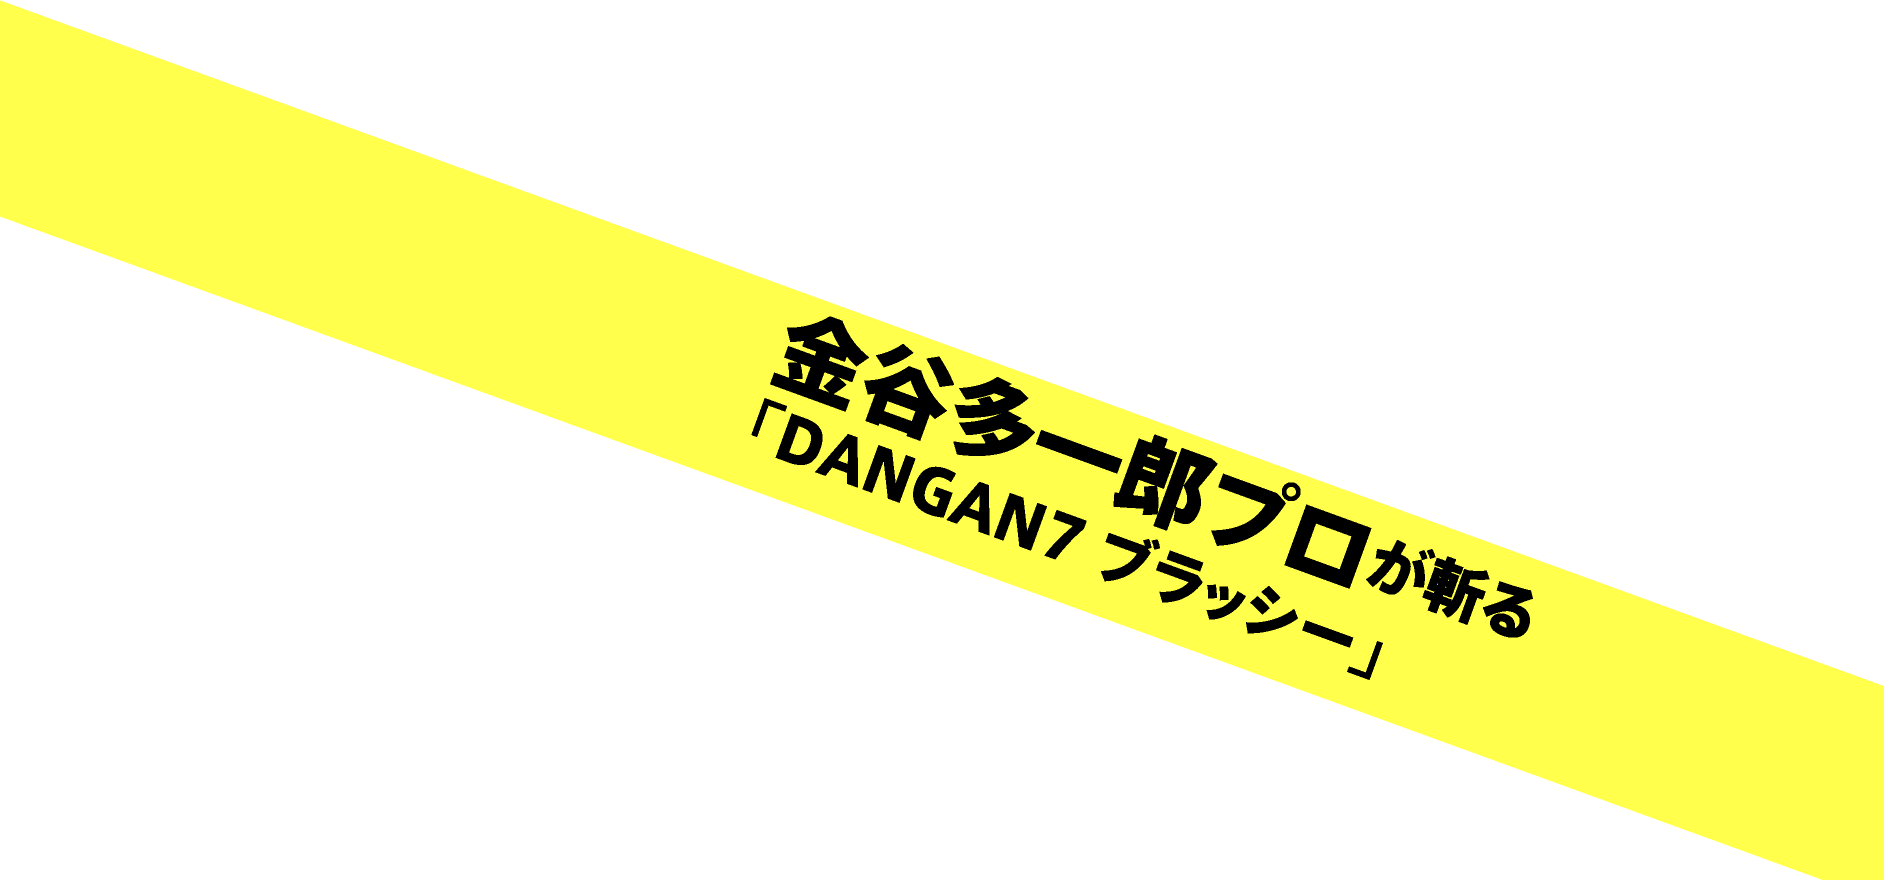 金谷多一郎プロが斬る「DANGAN7 ブラッシー」